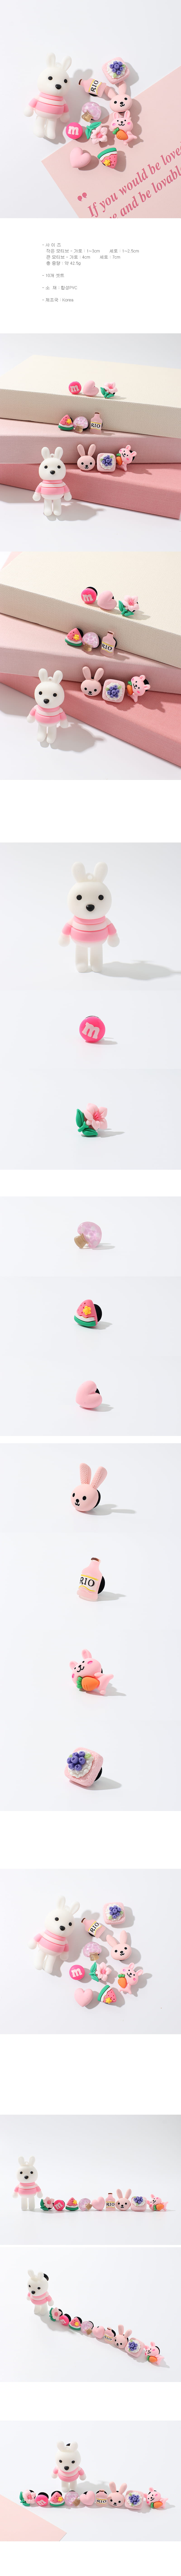 Jireh Bow - Korean Baby Fashion - #onlinebabyboutique - Pink Lover Rabbit Zibitz